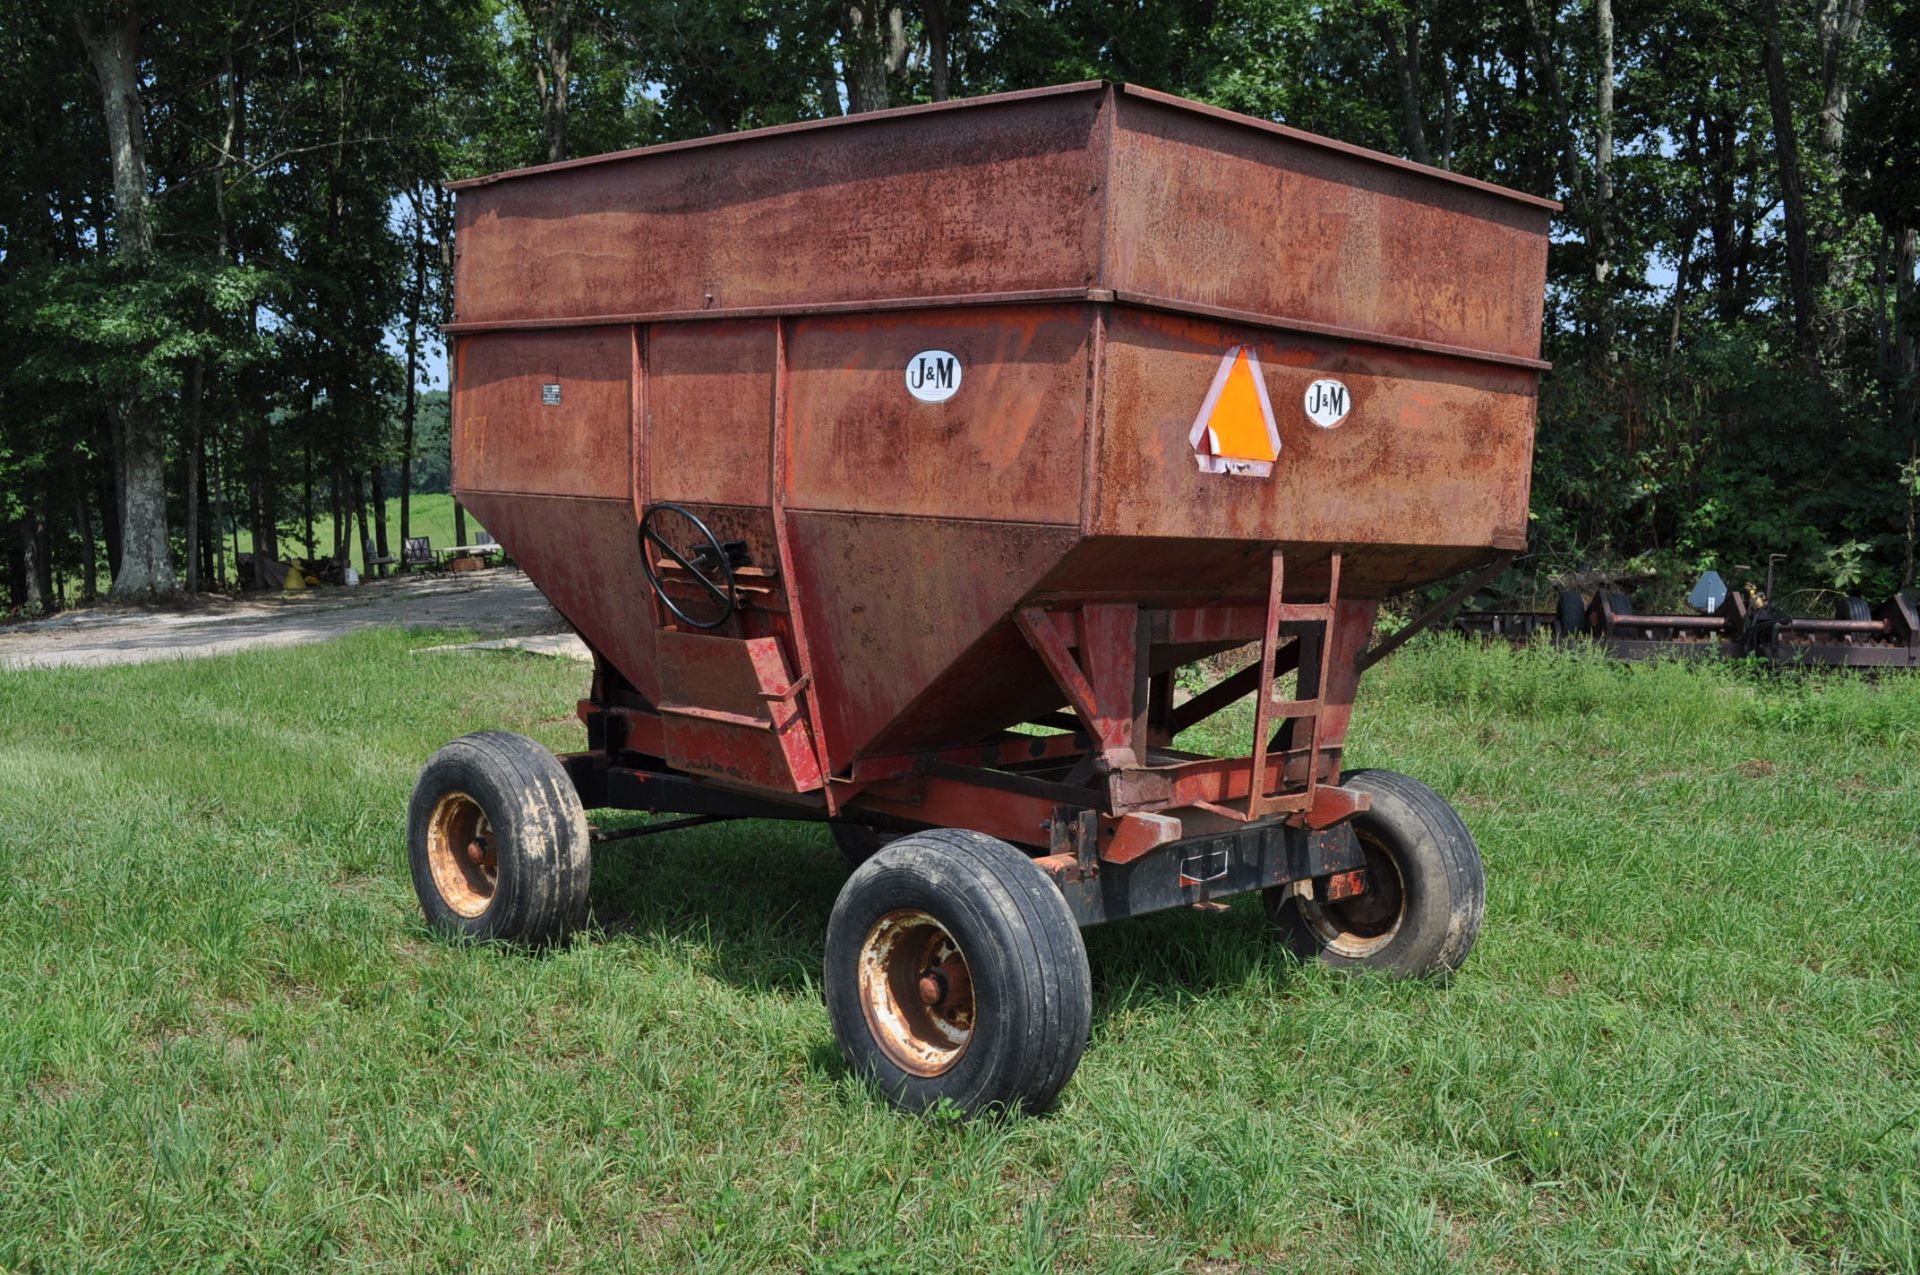 250 bu gravity wagon, Ed Johnson - Jackson, Ohio (740) 988-0813 - Image 2 of 11